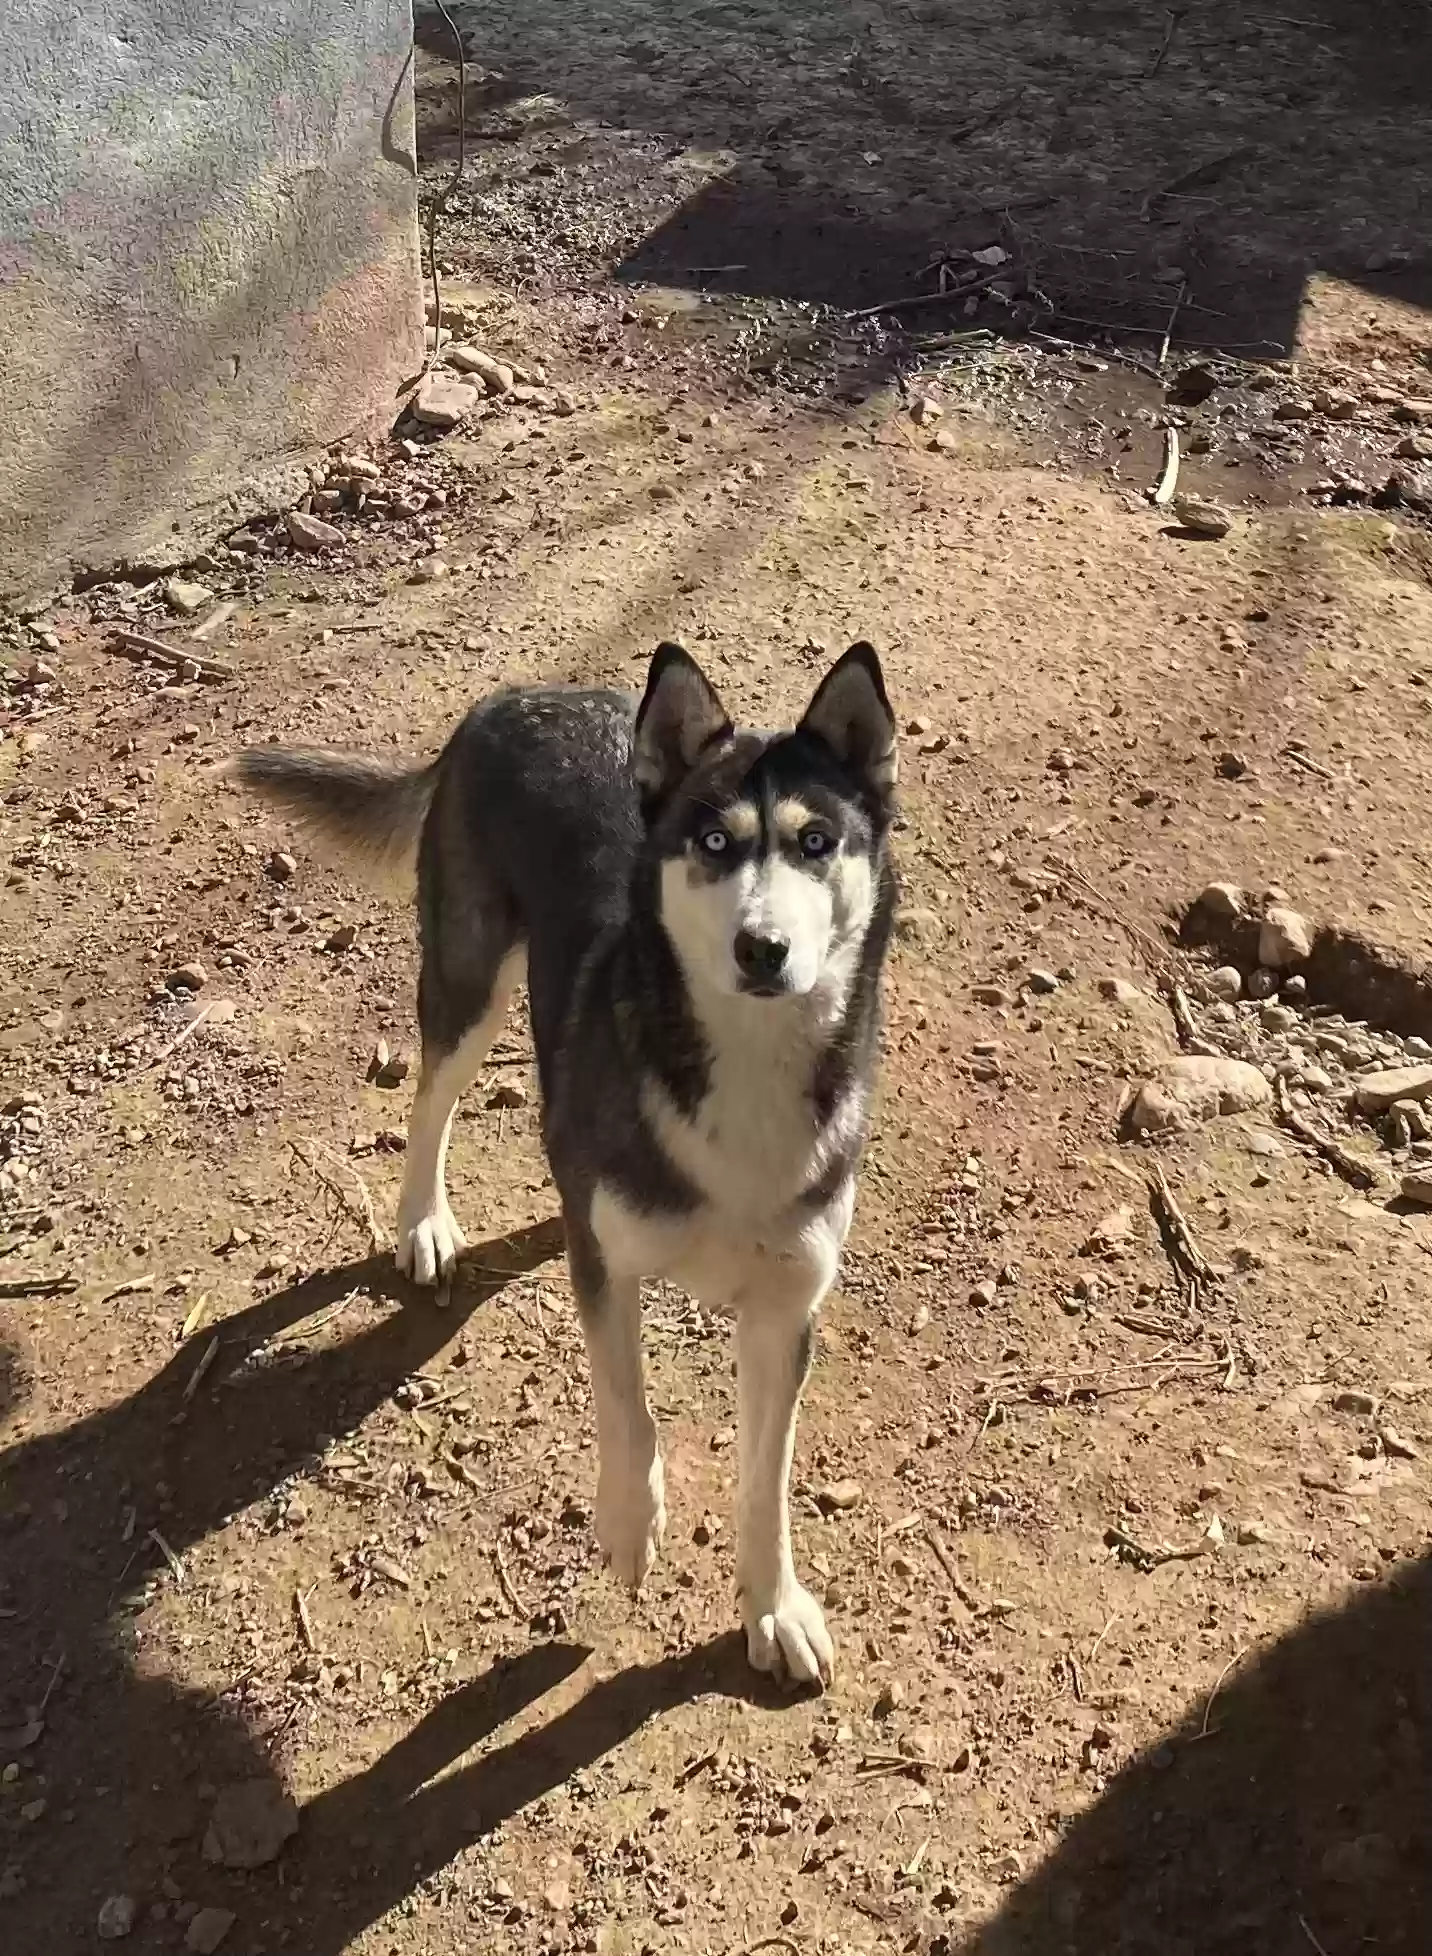 adoptable Dog in Santa Fe,NM named Blue